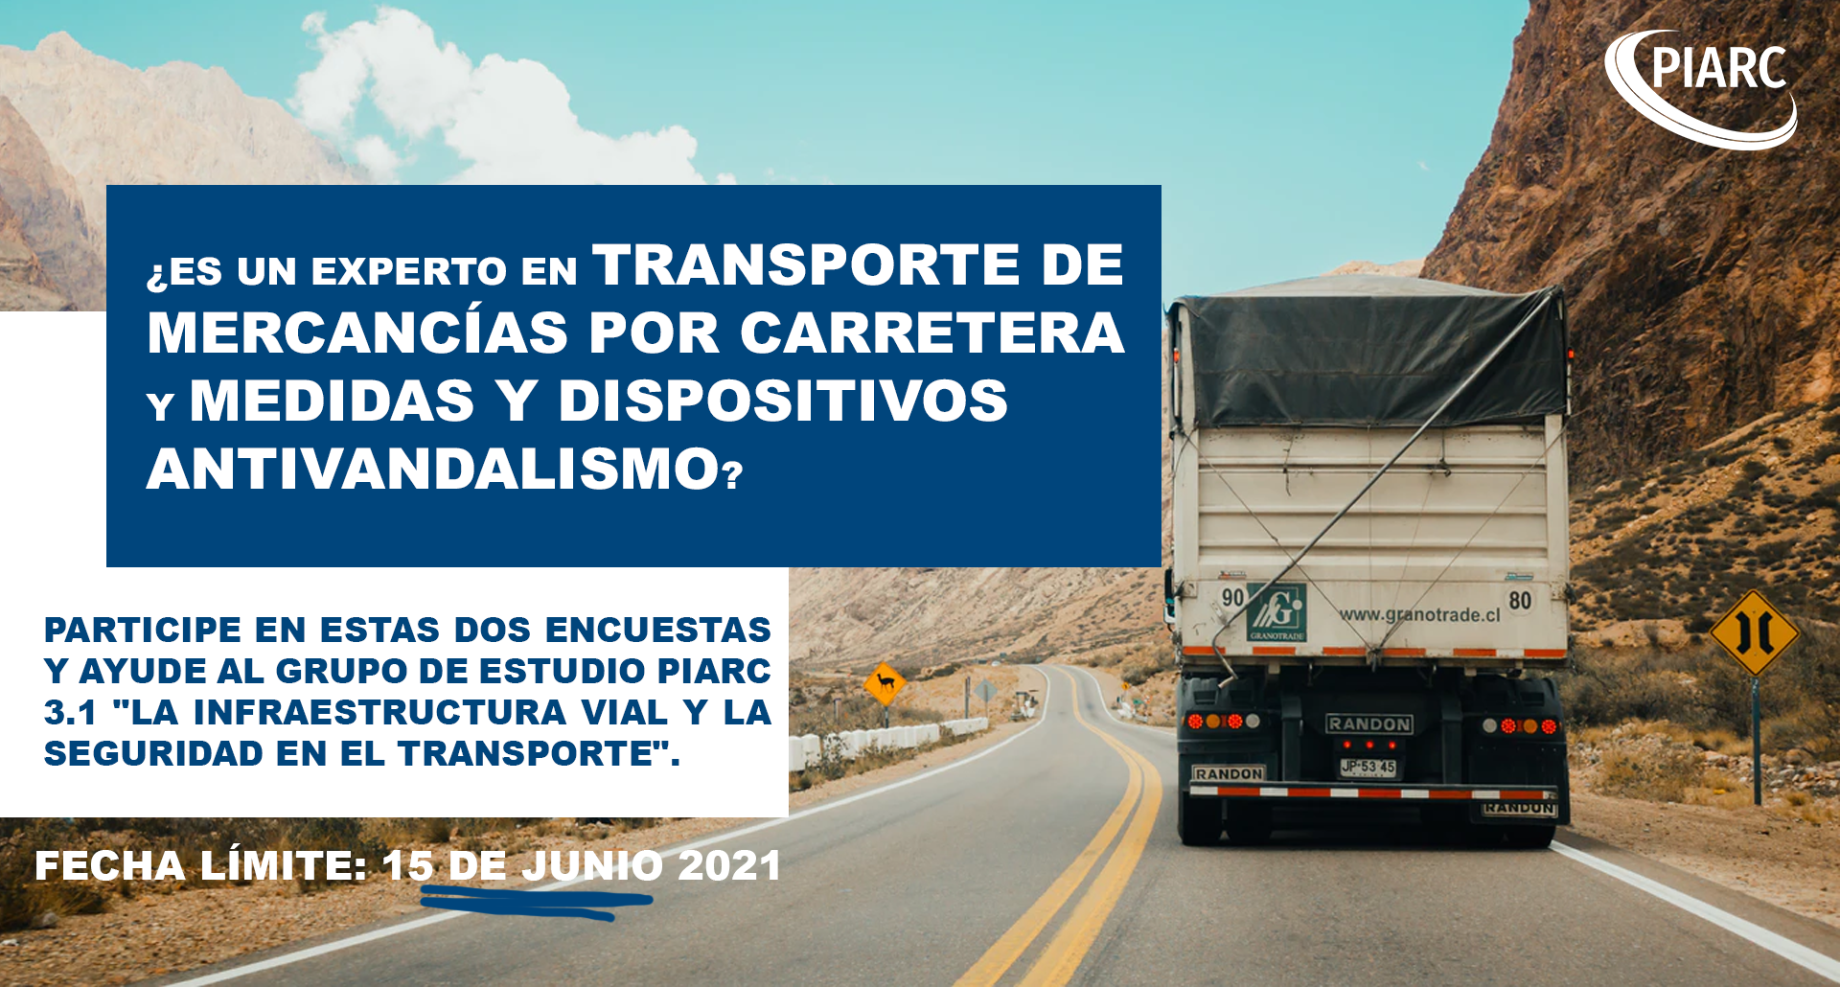 Participe en estas dos encuestas y ayude al Grupo de Estudio 3.1 de PIARC "La Infraestructura Vial y la Seguridad en el Transporte".